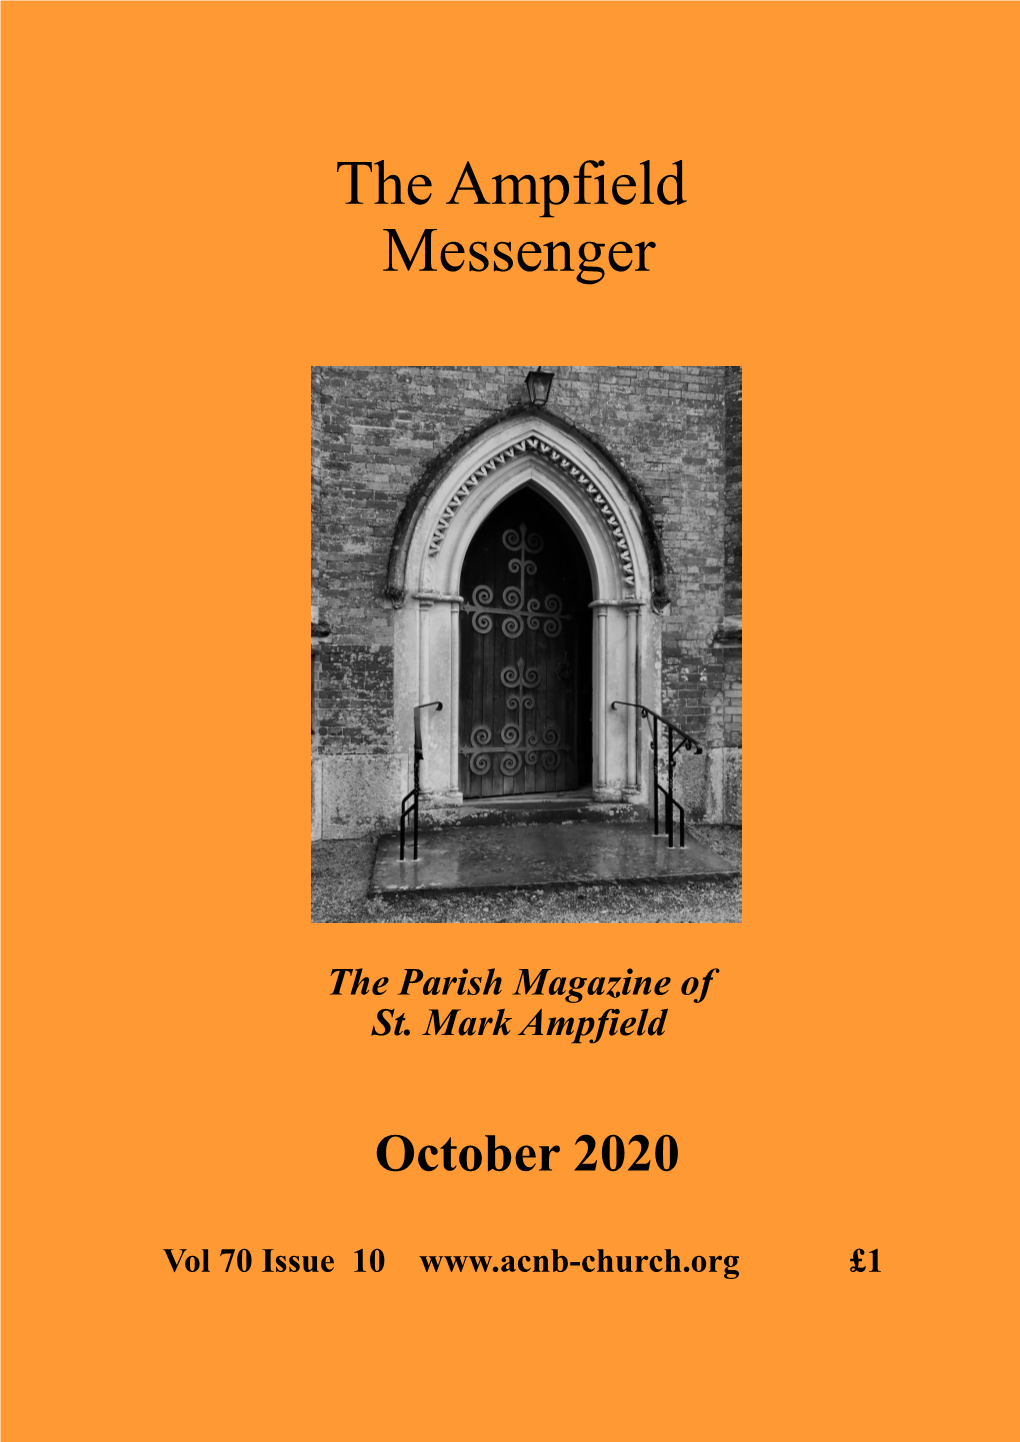 The Ampfield Messenger